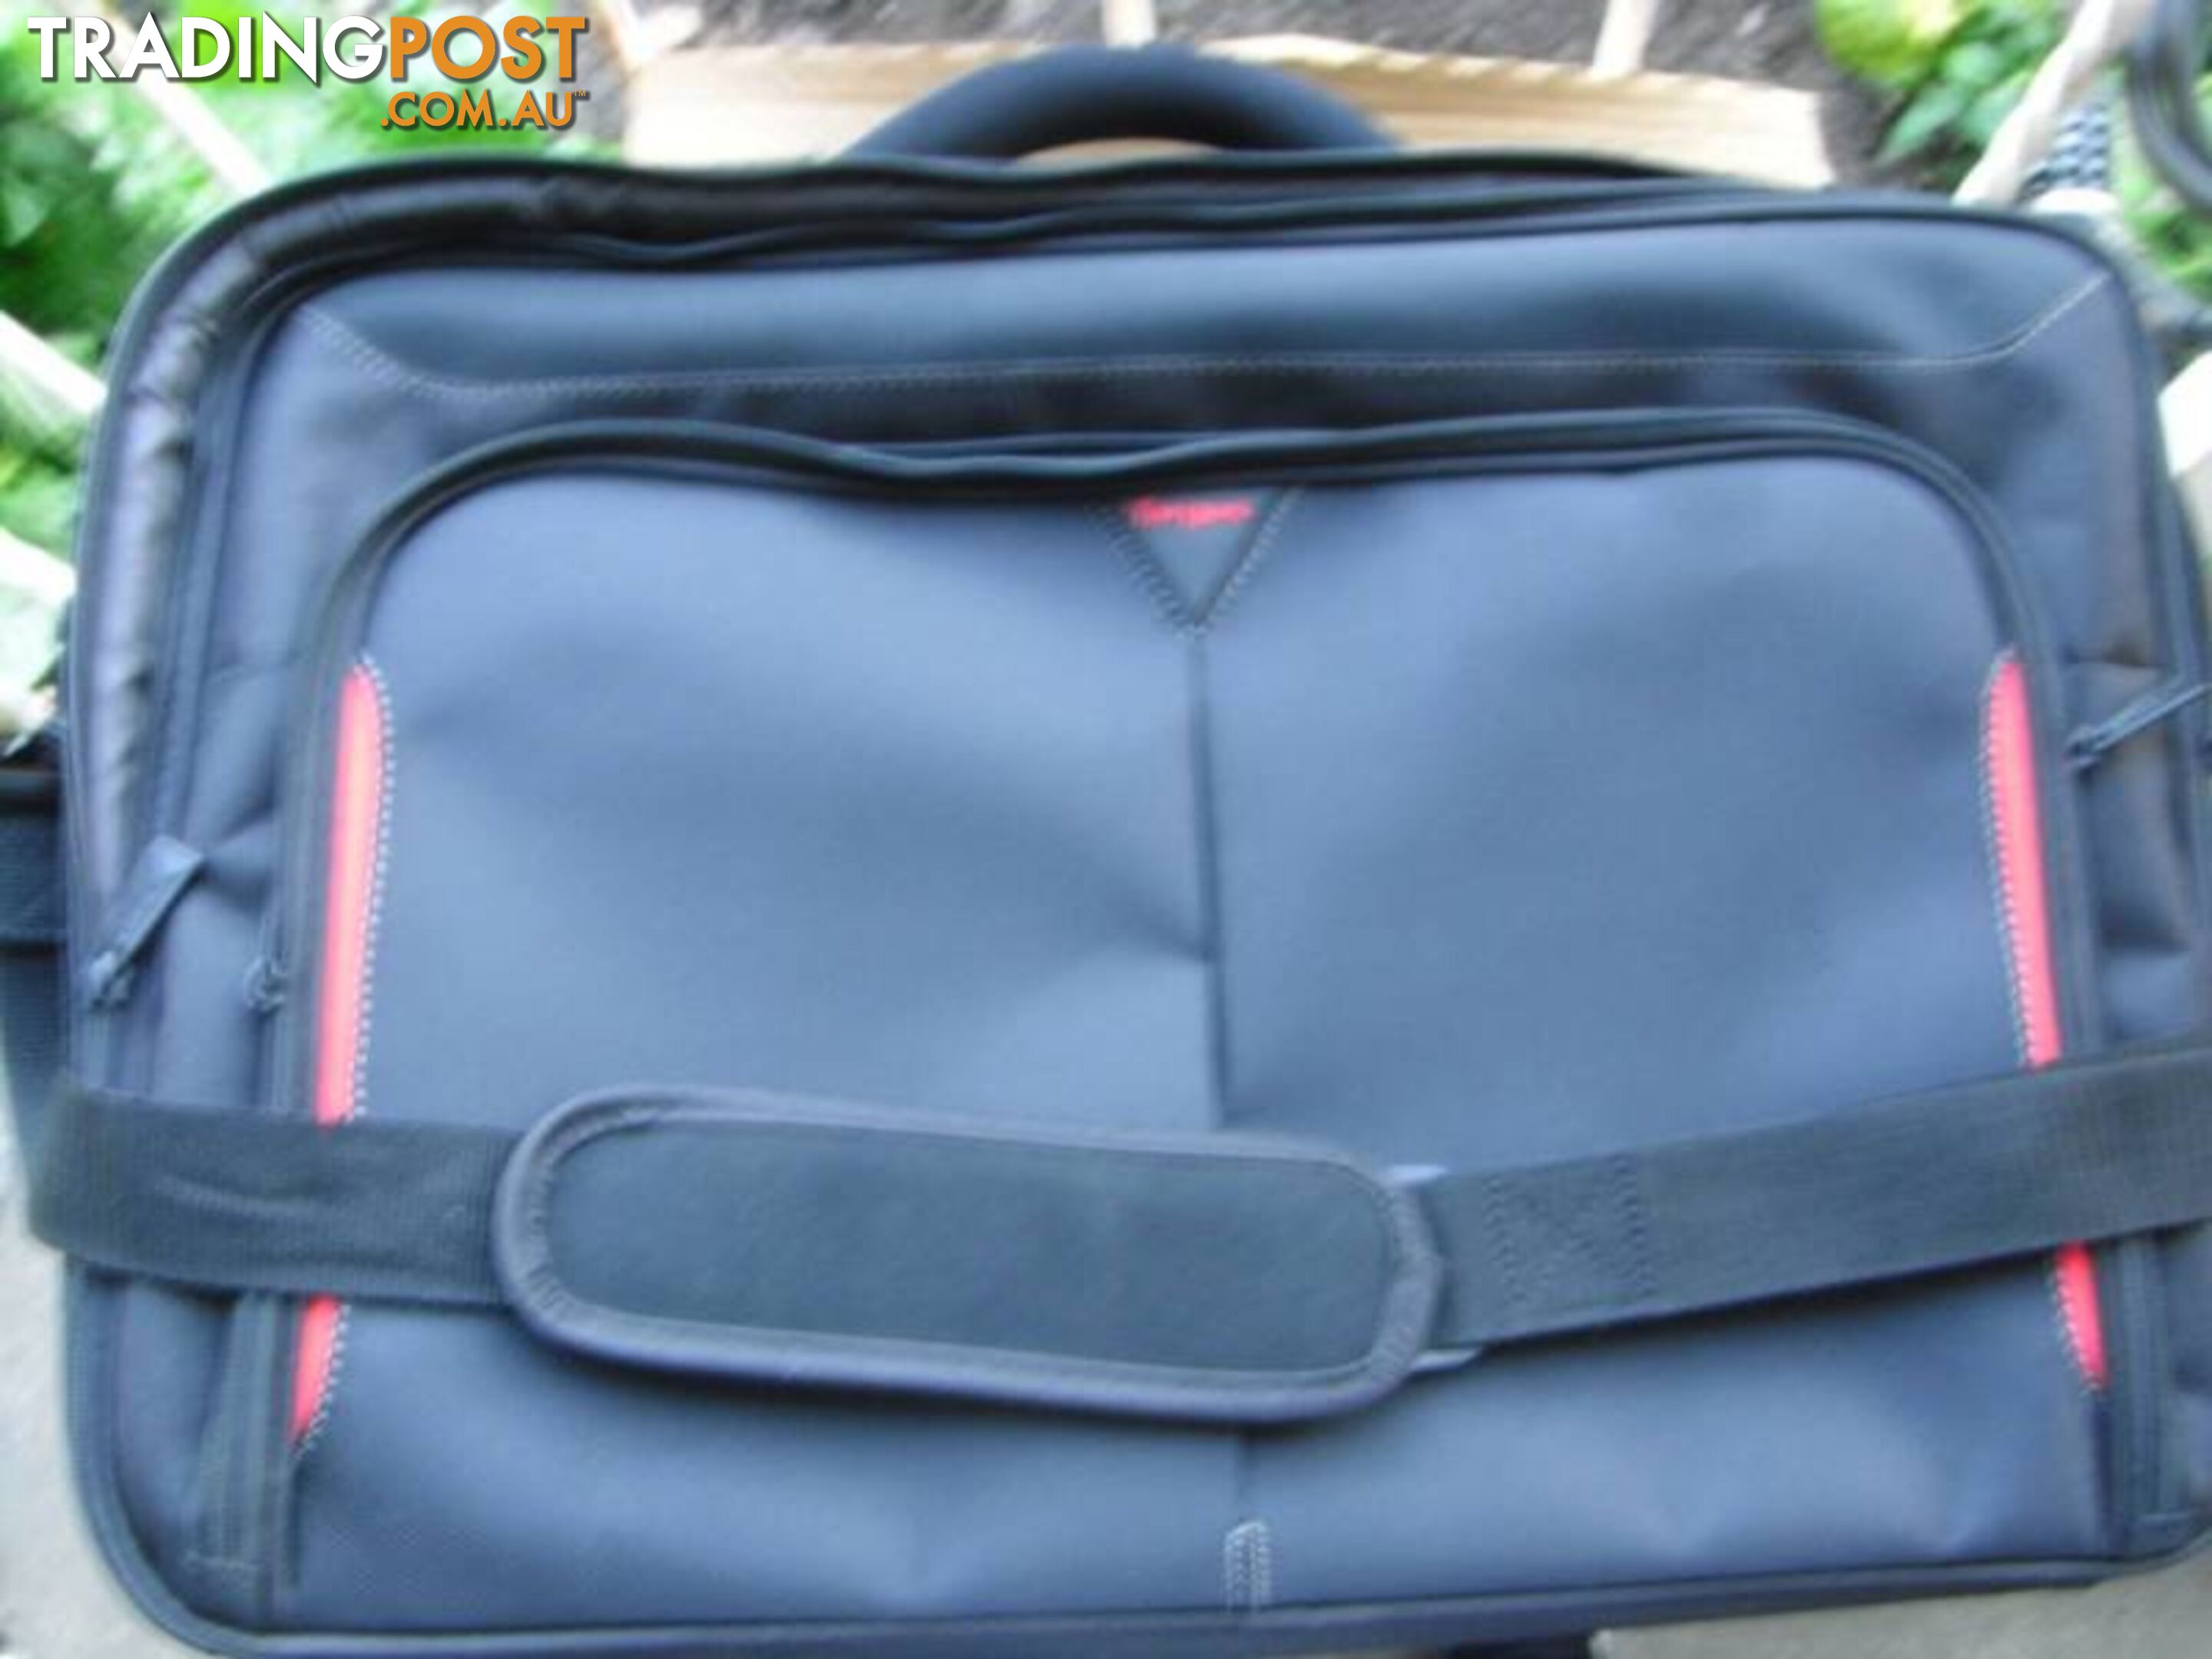 new large 17" targus laptop bag